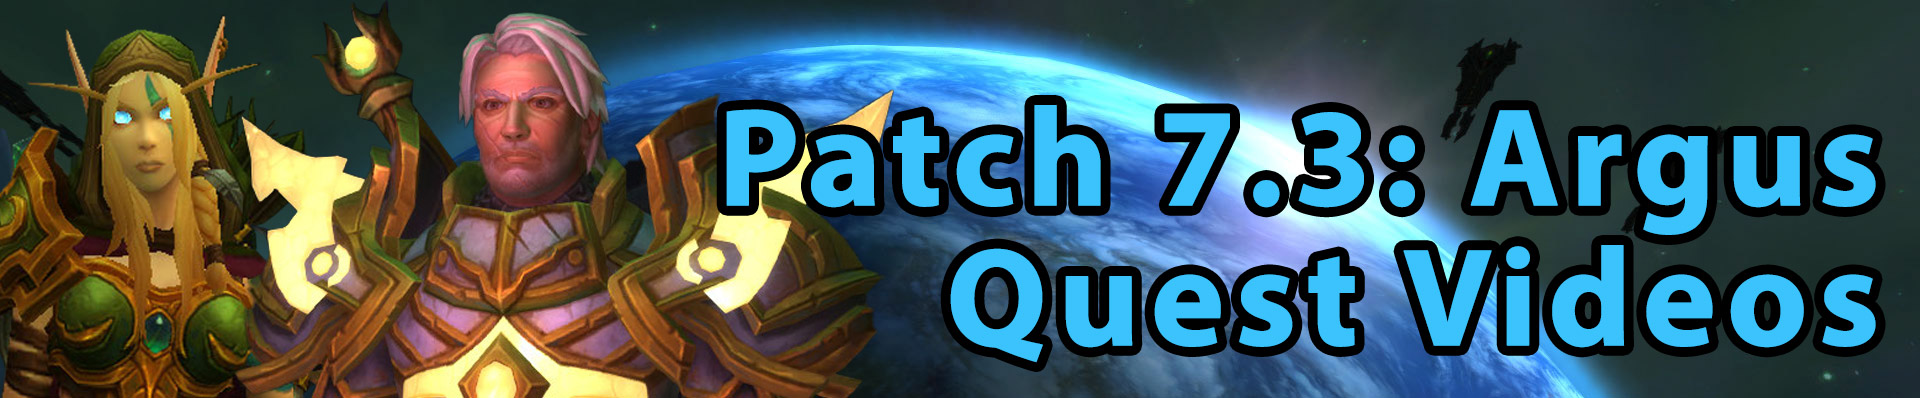 Patch 7.3 quest videos